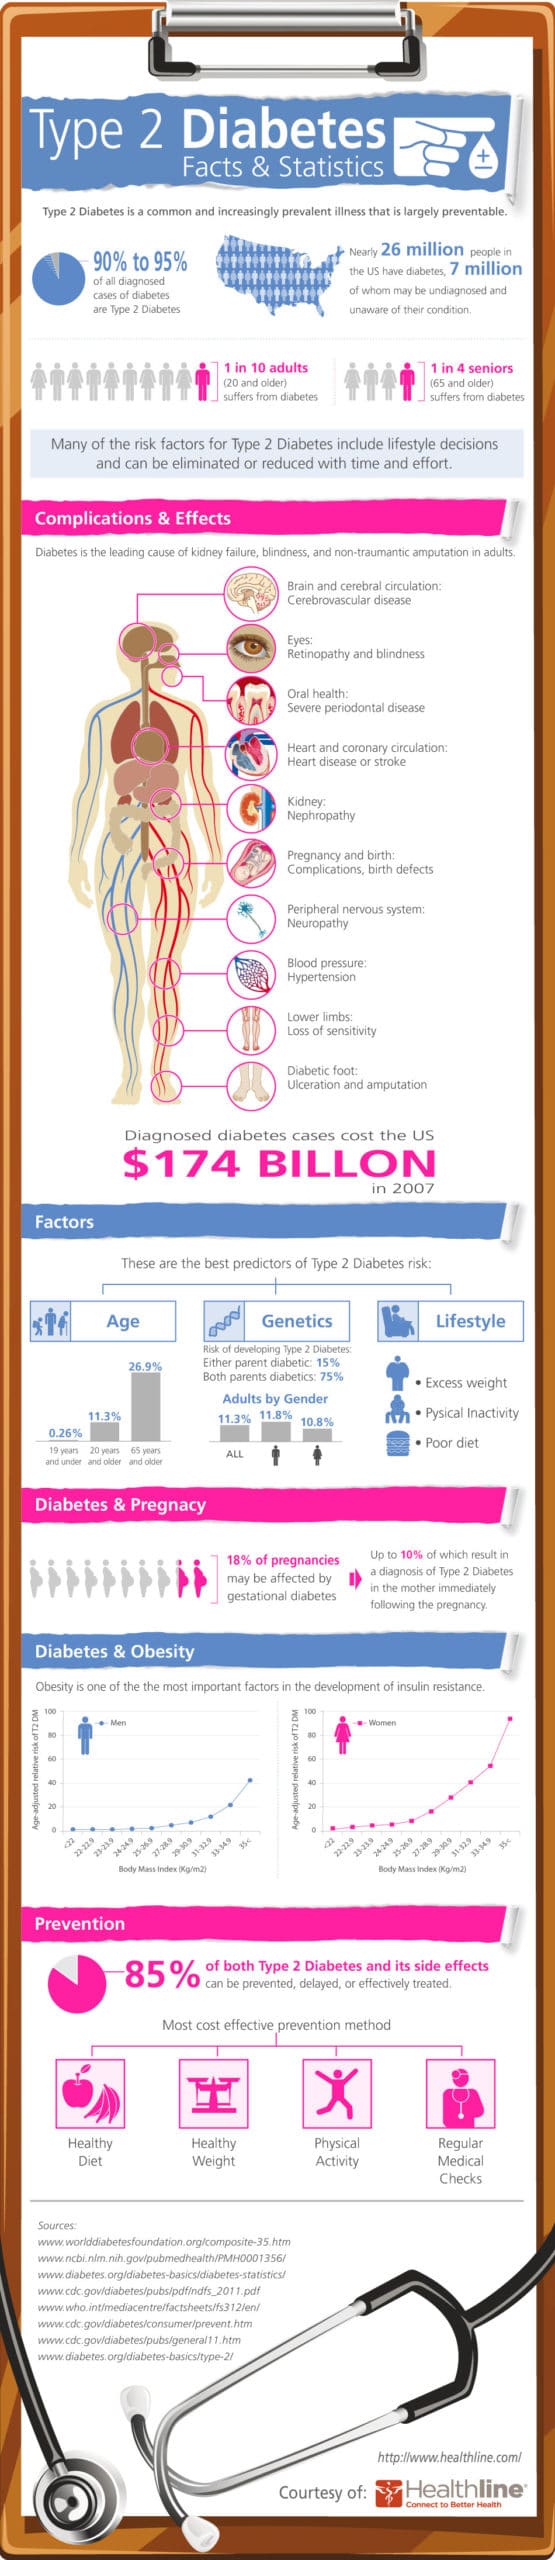 diabetes infographic